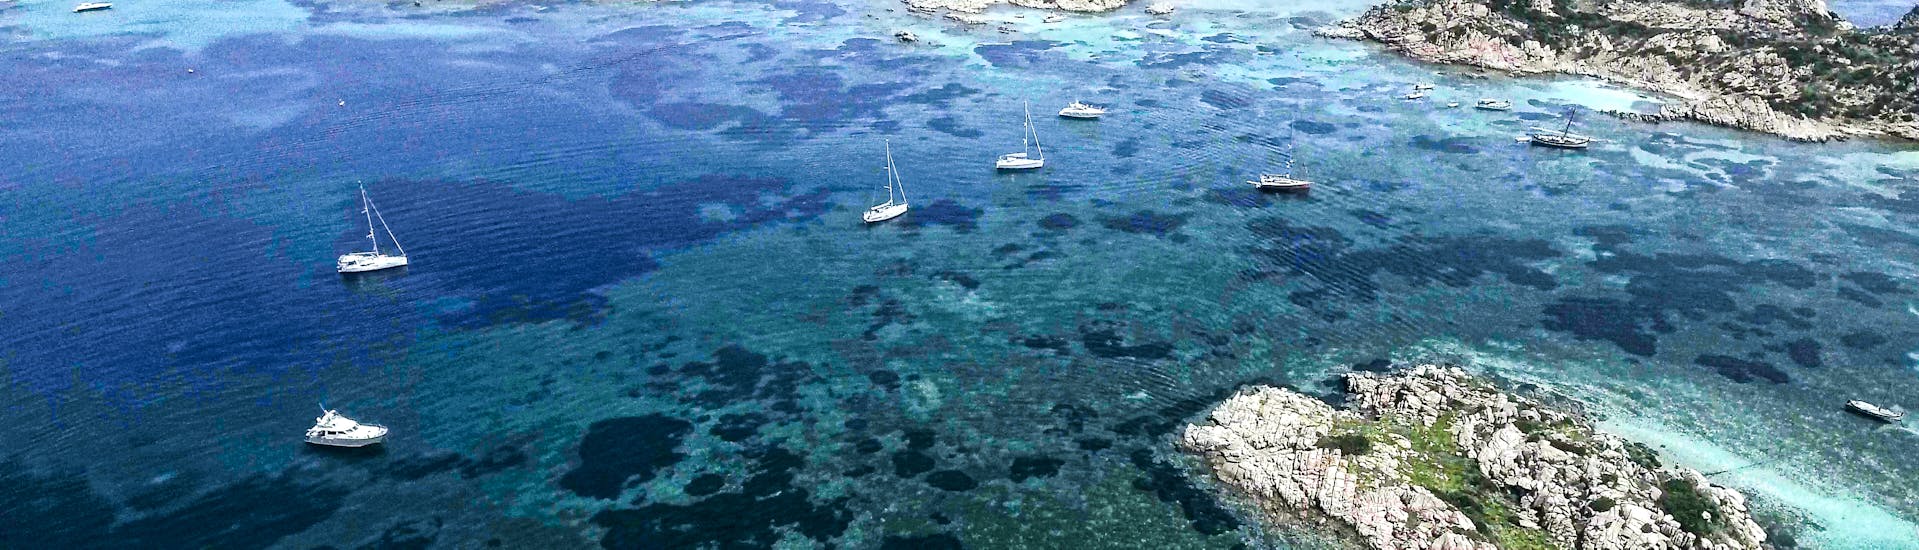 Las islas del archipiélago de la Maddalena que puedes visitar durante el paseo en barco privado por el norte de Cerdeña o Córcega con Maggior leggero Tour La Maddalena.